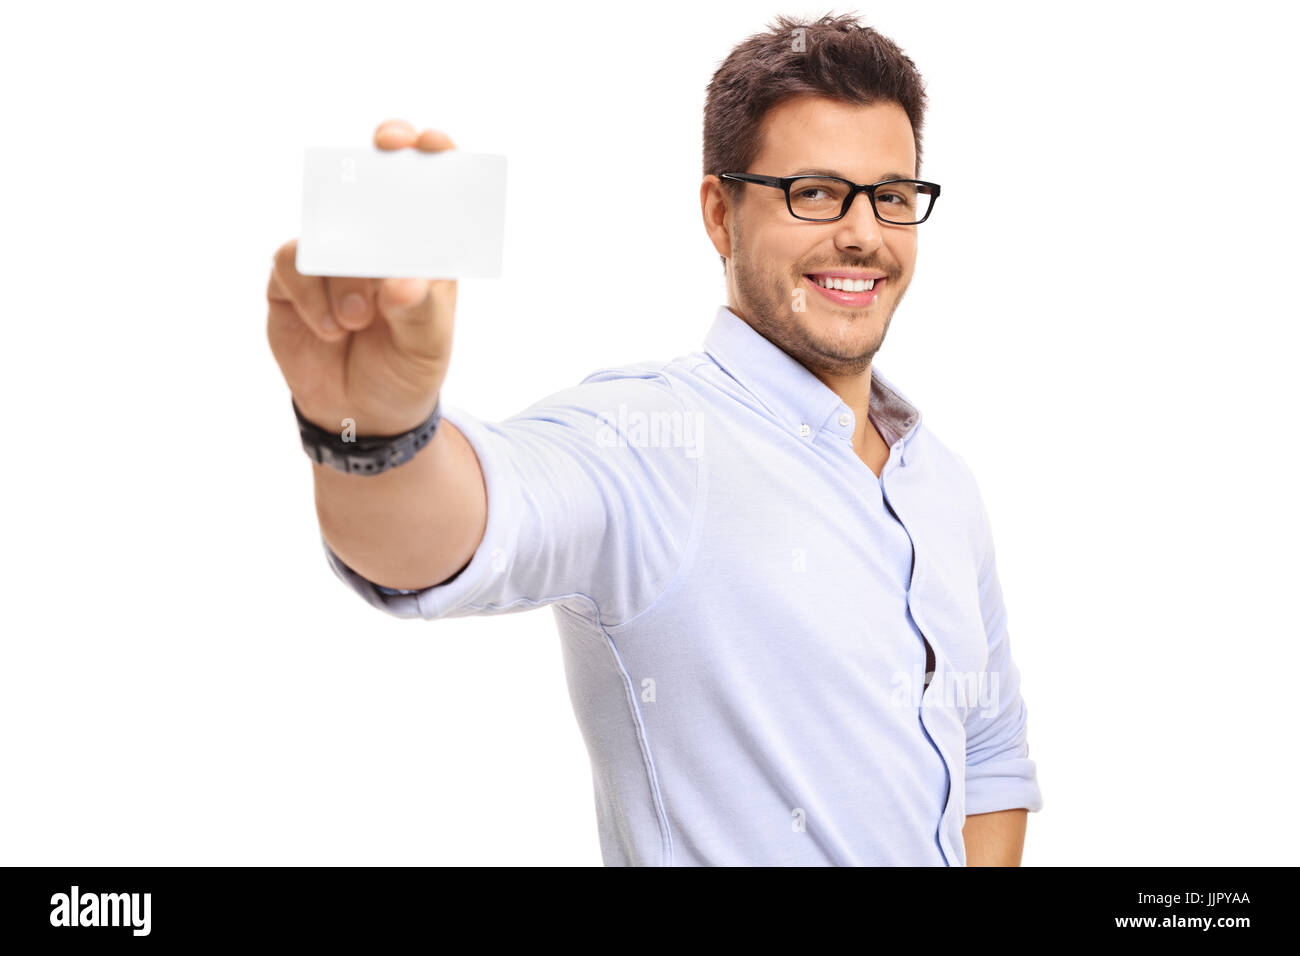 Jeune homme montrant un blank business card isolé sur fond blanc Banque D'Images